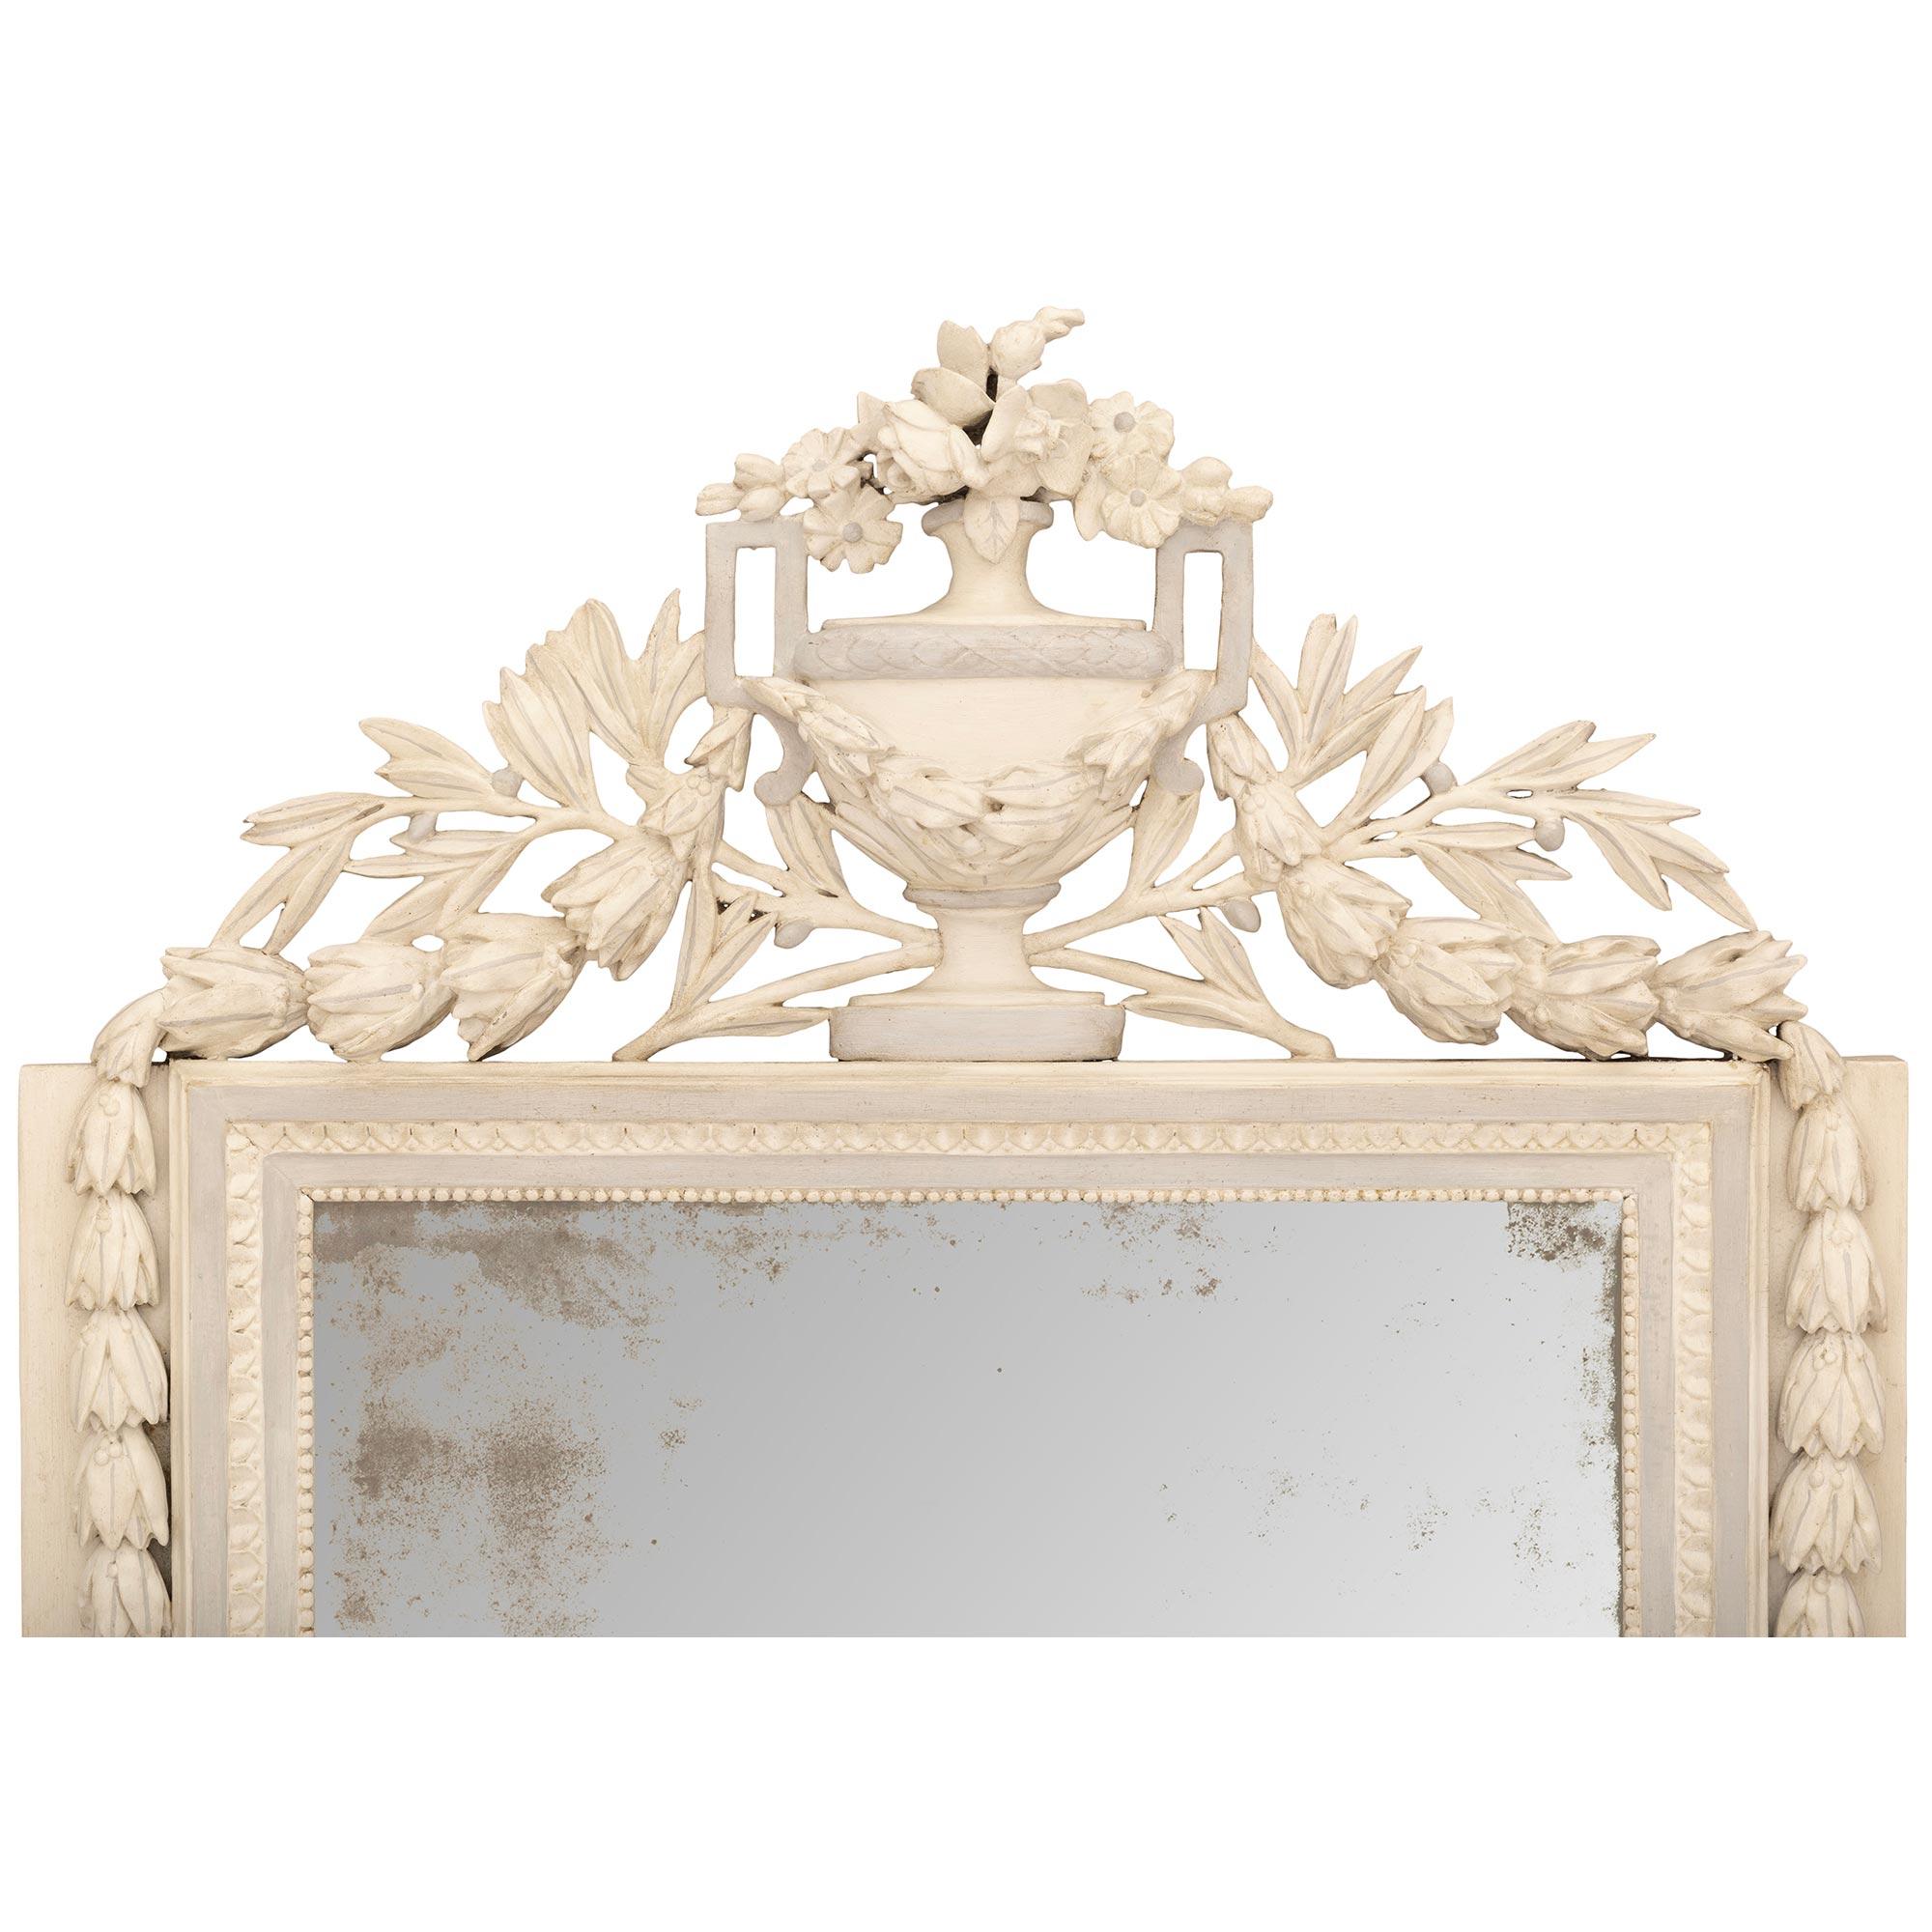 Ein einzigartiger und äußerst dekorativer französischer Spiegel aus patiniertem Holz aus dem 18. Jahrhundert im Louis-XVI-Stil. Die originale Spiegelplatte befindet sich in einem patinierten weißen Rahmen und wird von den Ecken des Sockels aus von